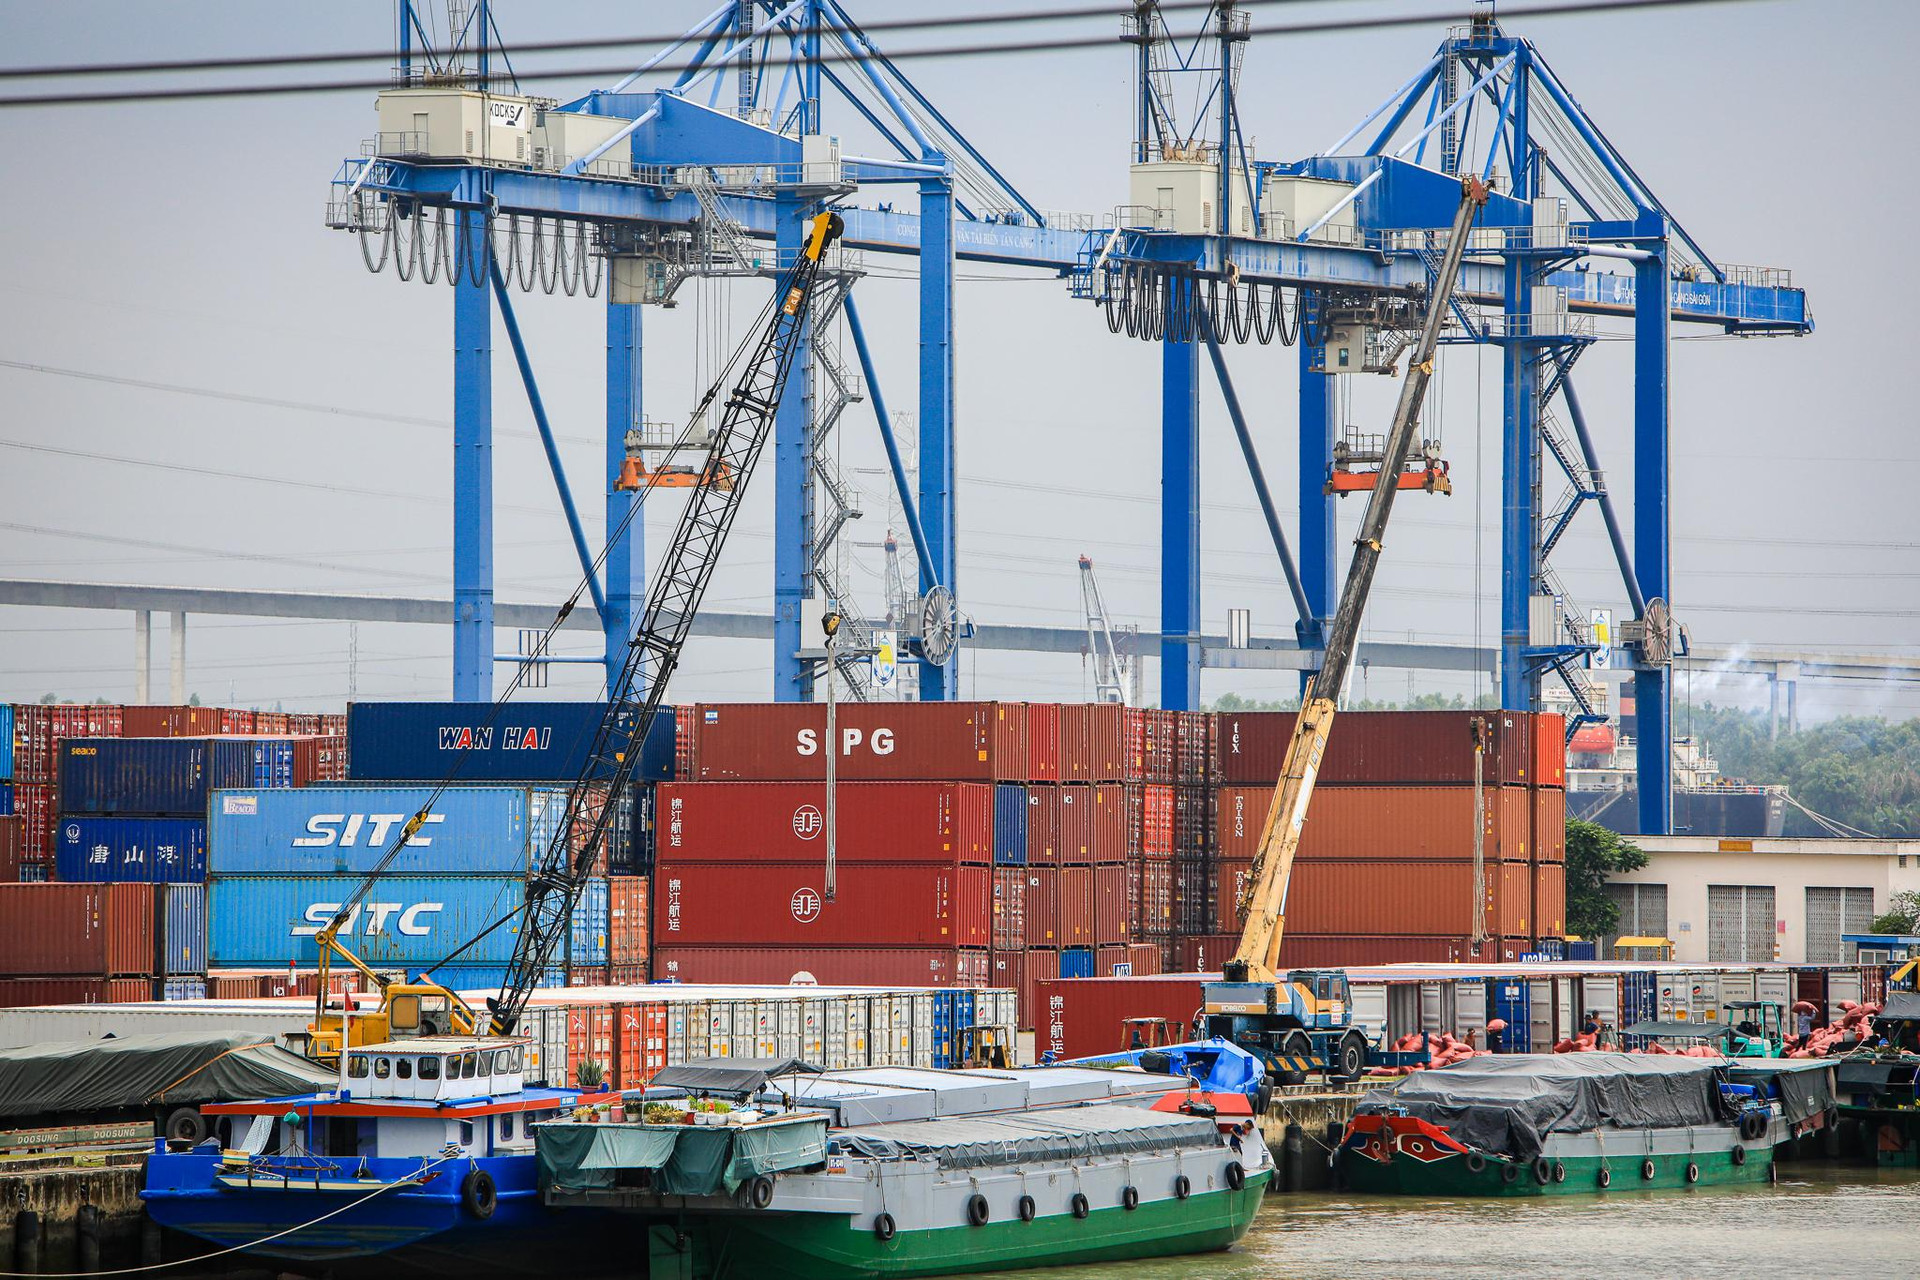 ‏K‏‏hu công nghiệp ‏‏có đến 3 cảng quốc tế, rộng nhất ‏‏TP. HCM - Ảnh 6.